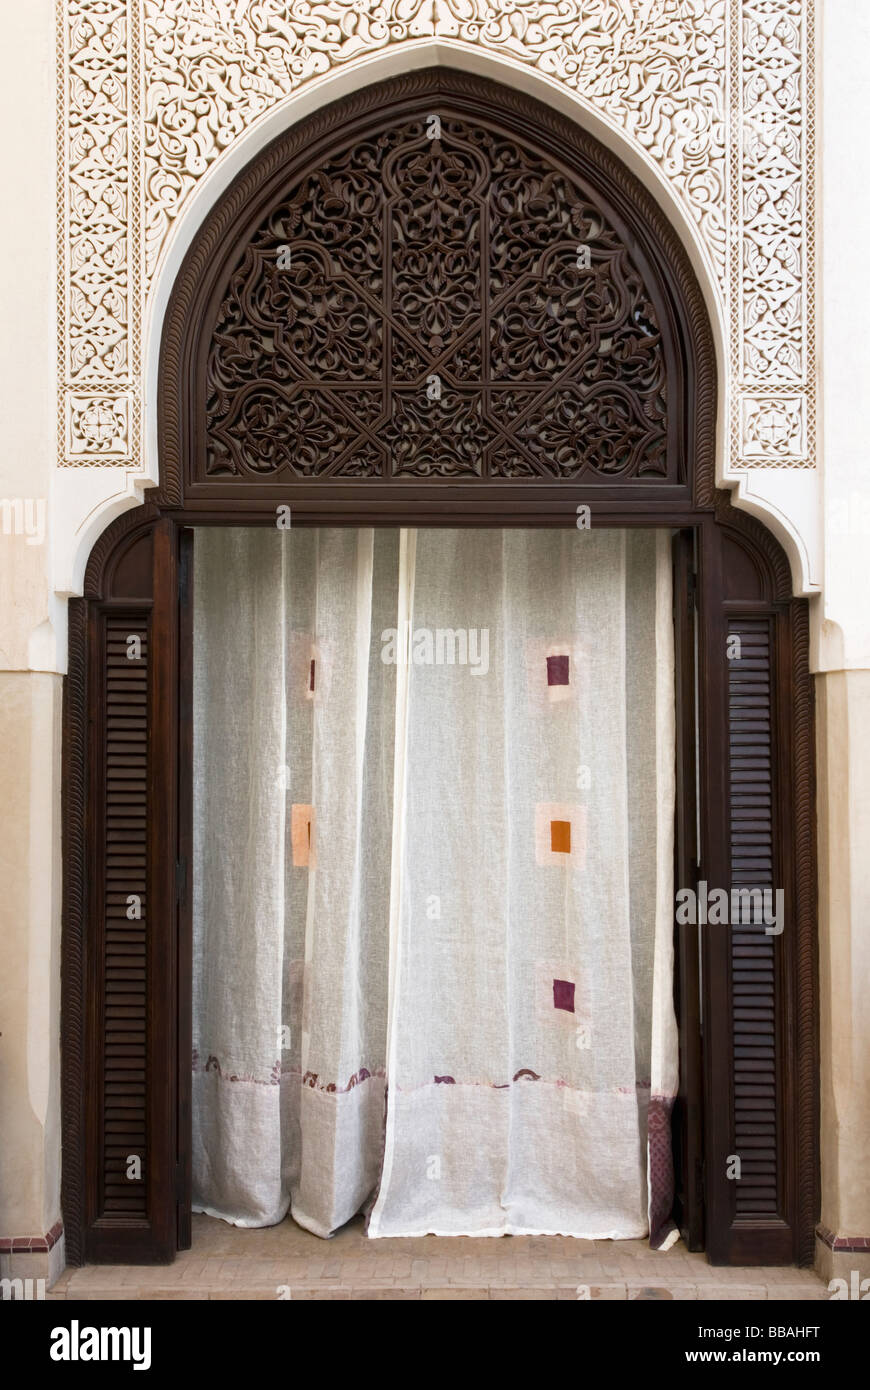 Rideaux décoratifs dans un stuccod arcade mauresque cacher une pièce cachée, la Villa des Orangers, Marrakech, Maroc Banque D'Images